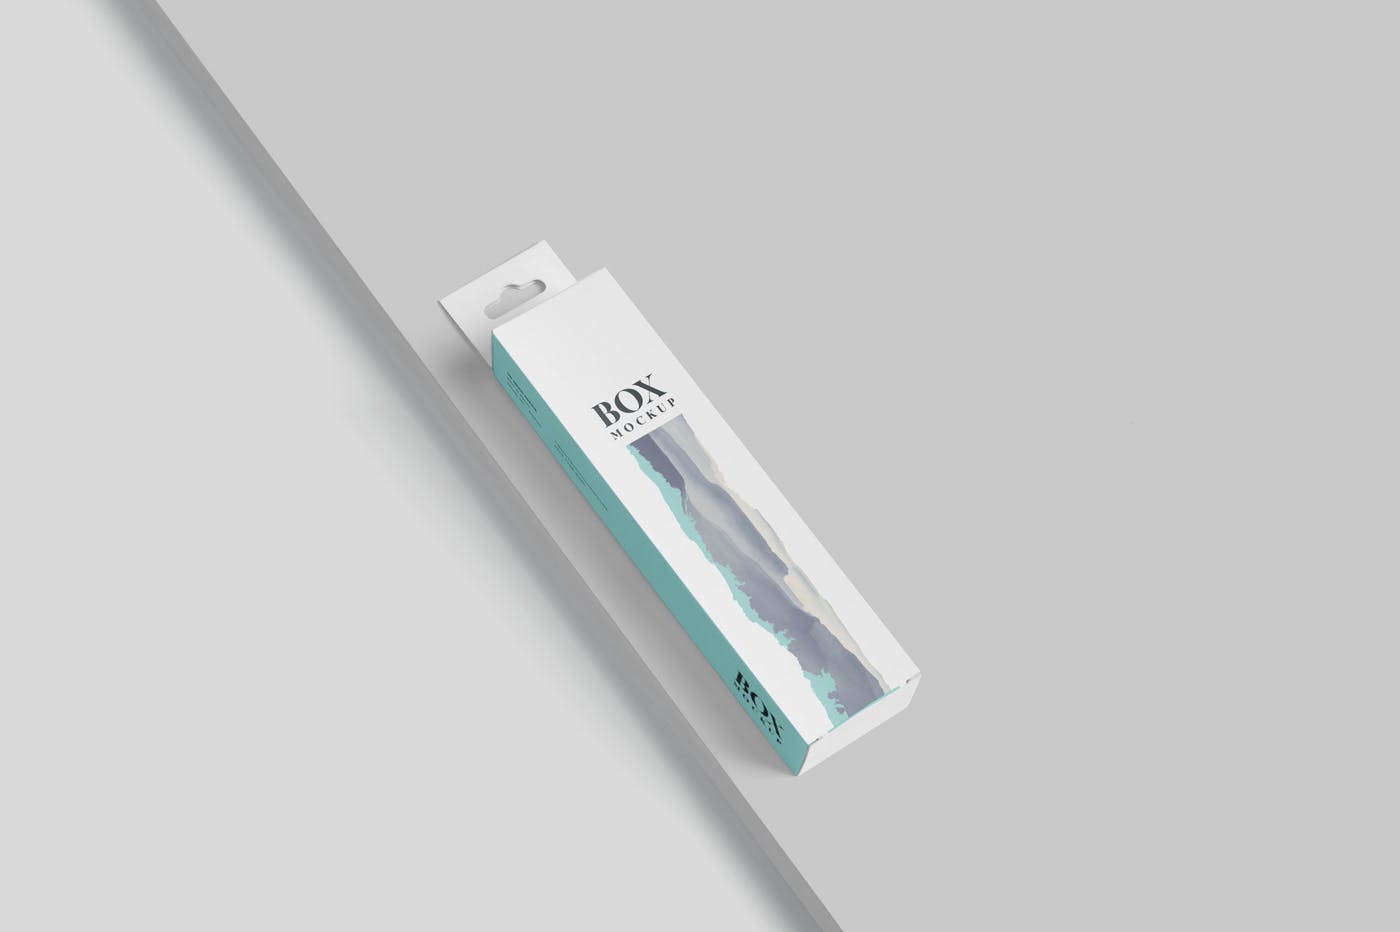 超薄矩形长条包装盒外观设计效果图素材库精选 Box Mockup PSDs – High Slim Rectangle Size Hanger插图(3)